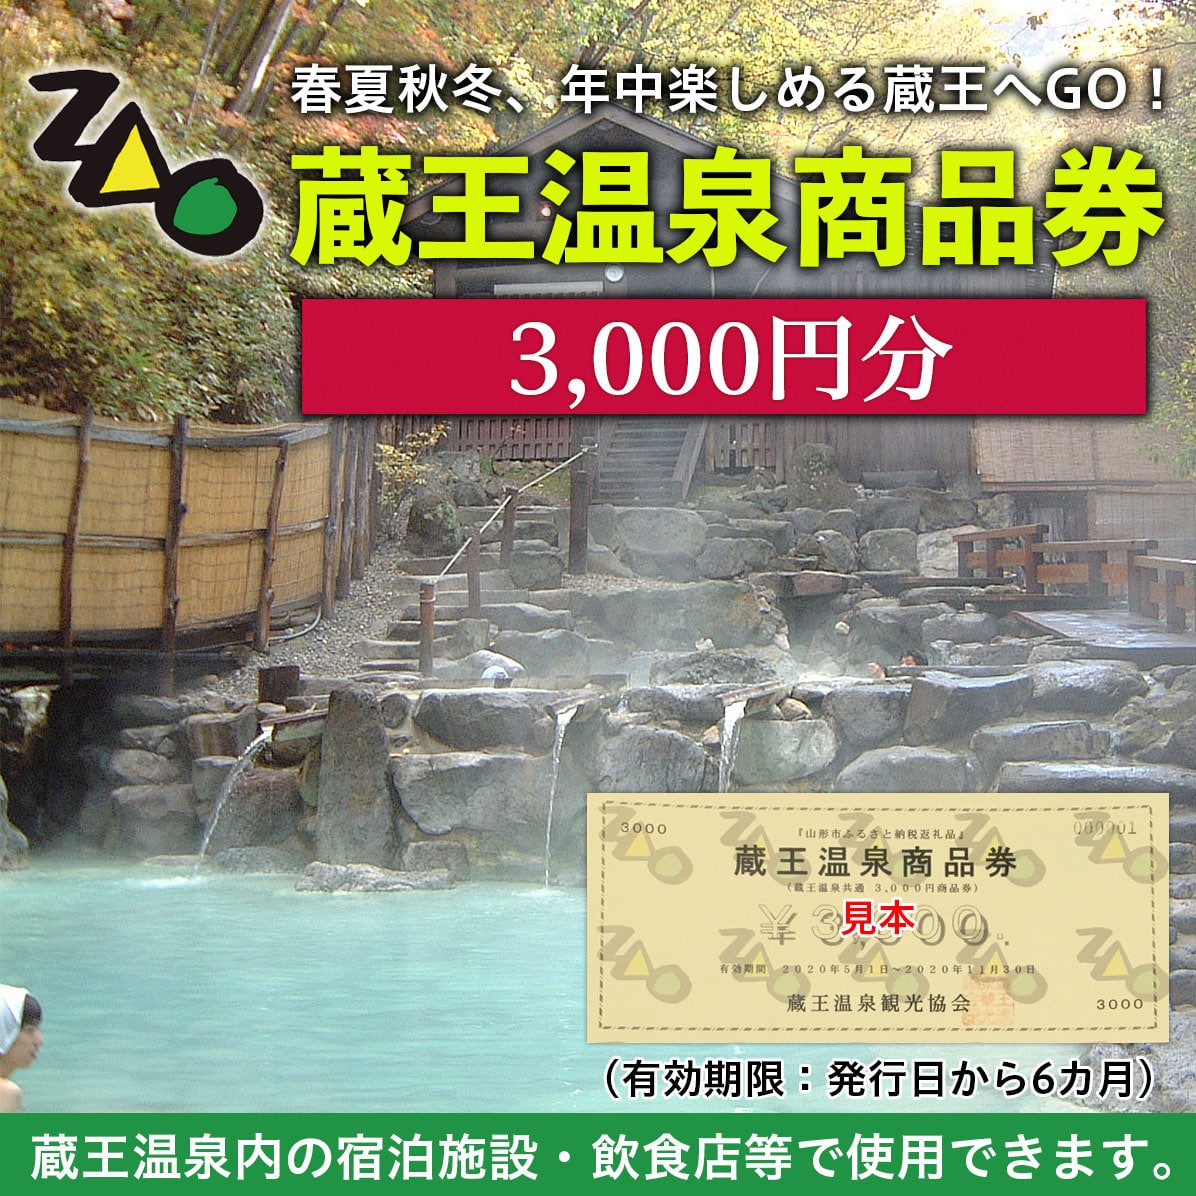 FY19-512 蔵王温泉商品券(3,000円分)